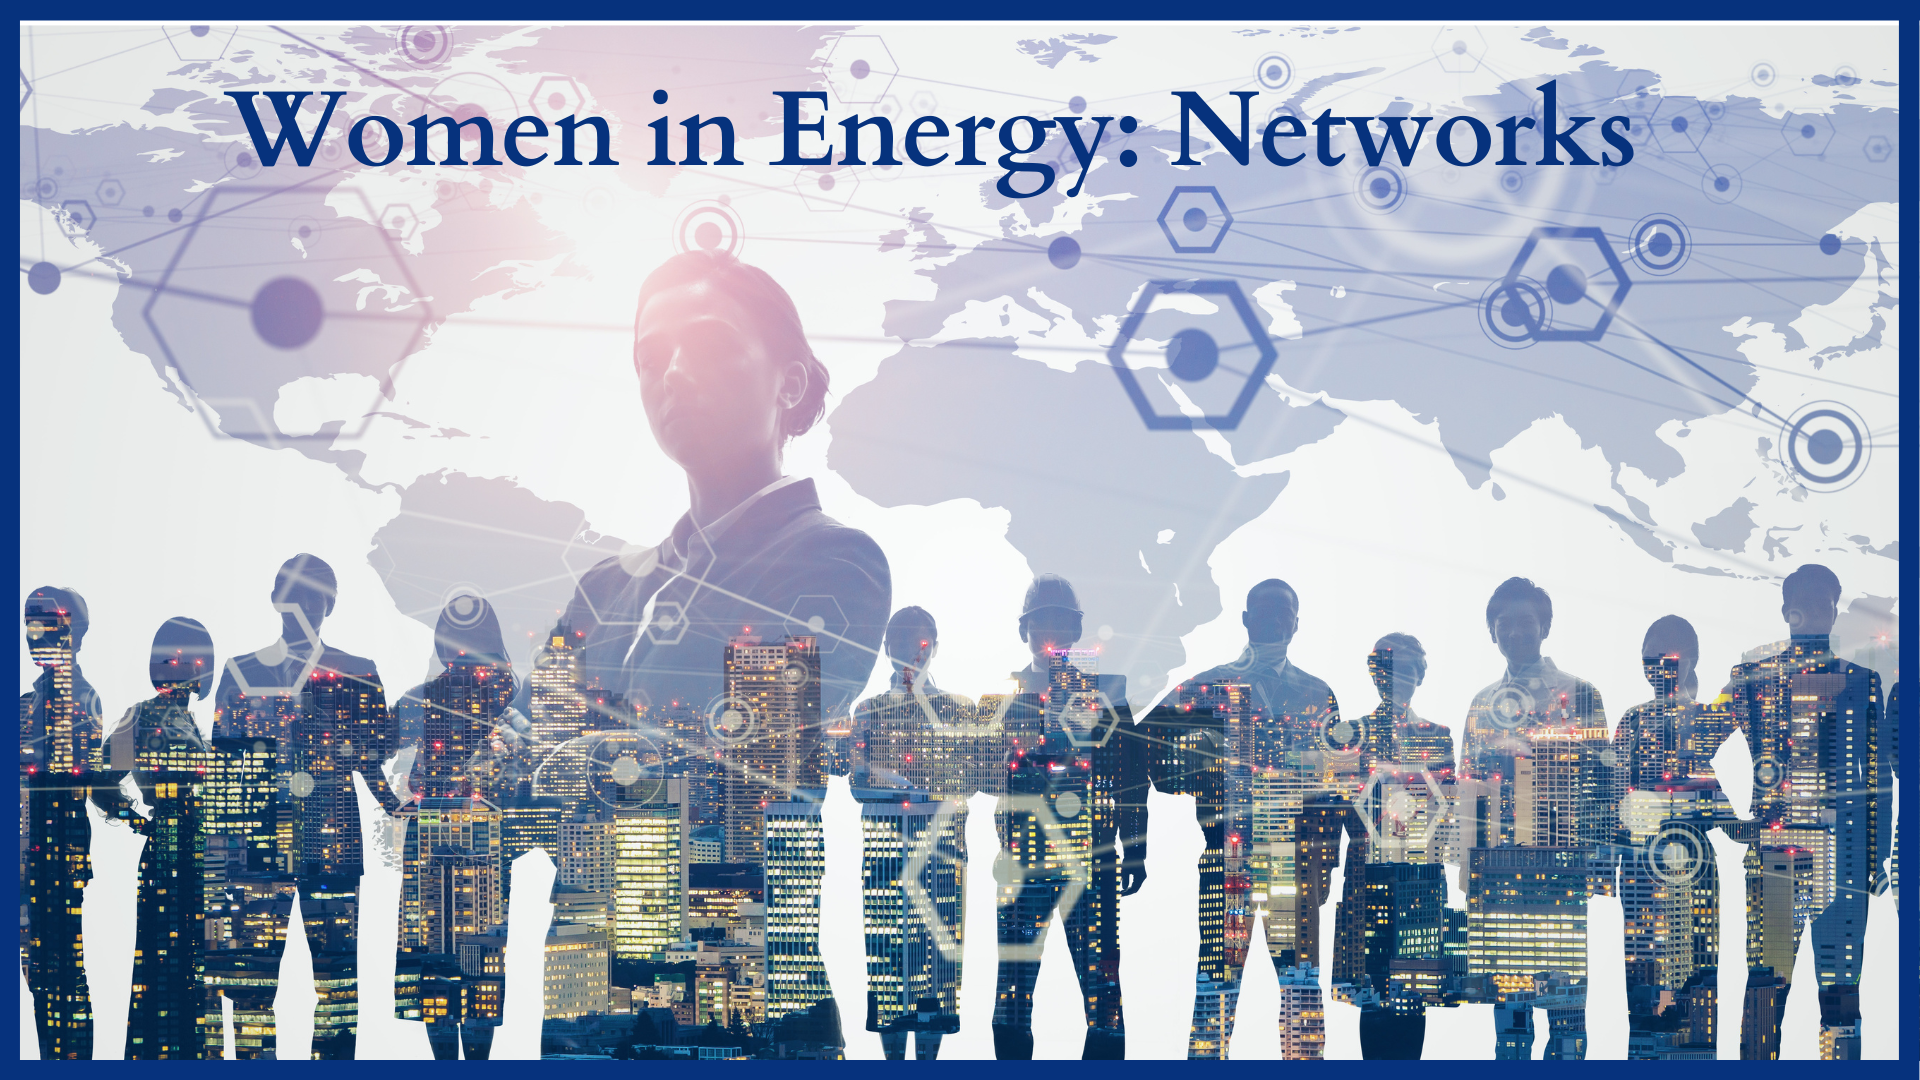 Women's Network 